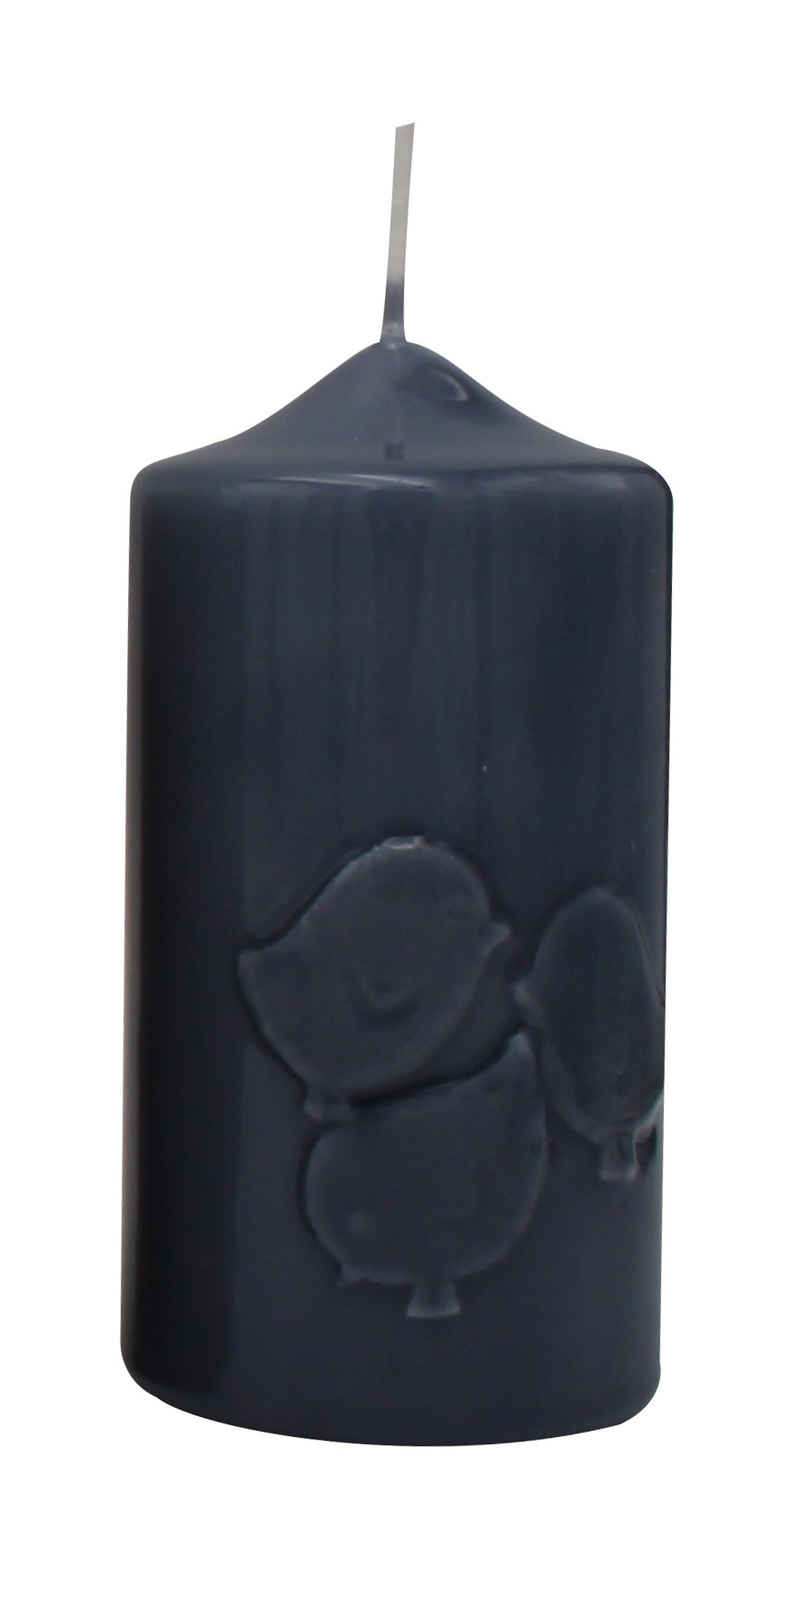 Kopschitz Kerzen Stumpenkerze Kerze "Küken" Blau-Grau gelackt 120 x Ø 60 mm, 1 Stück